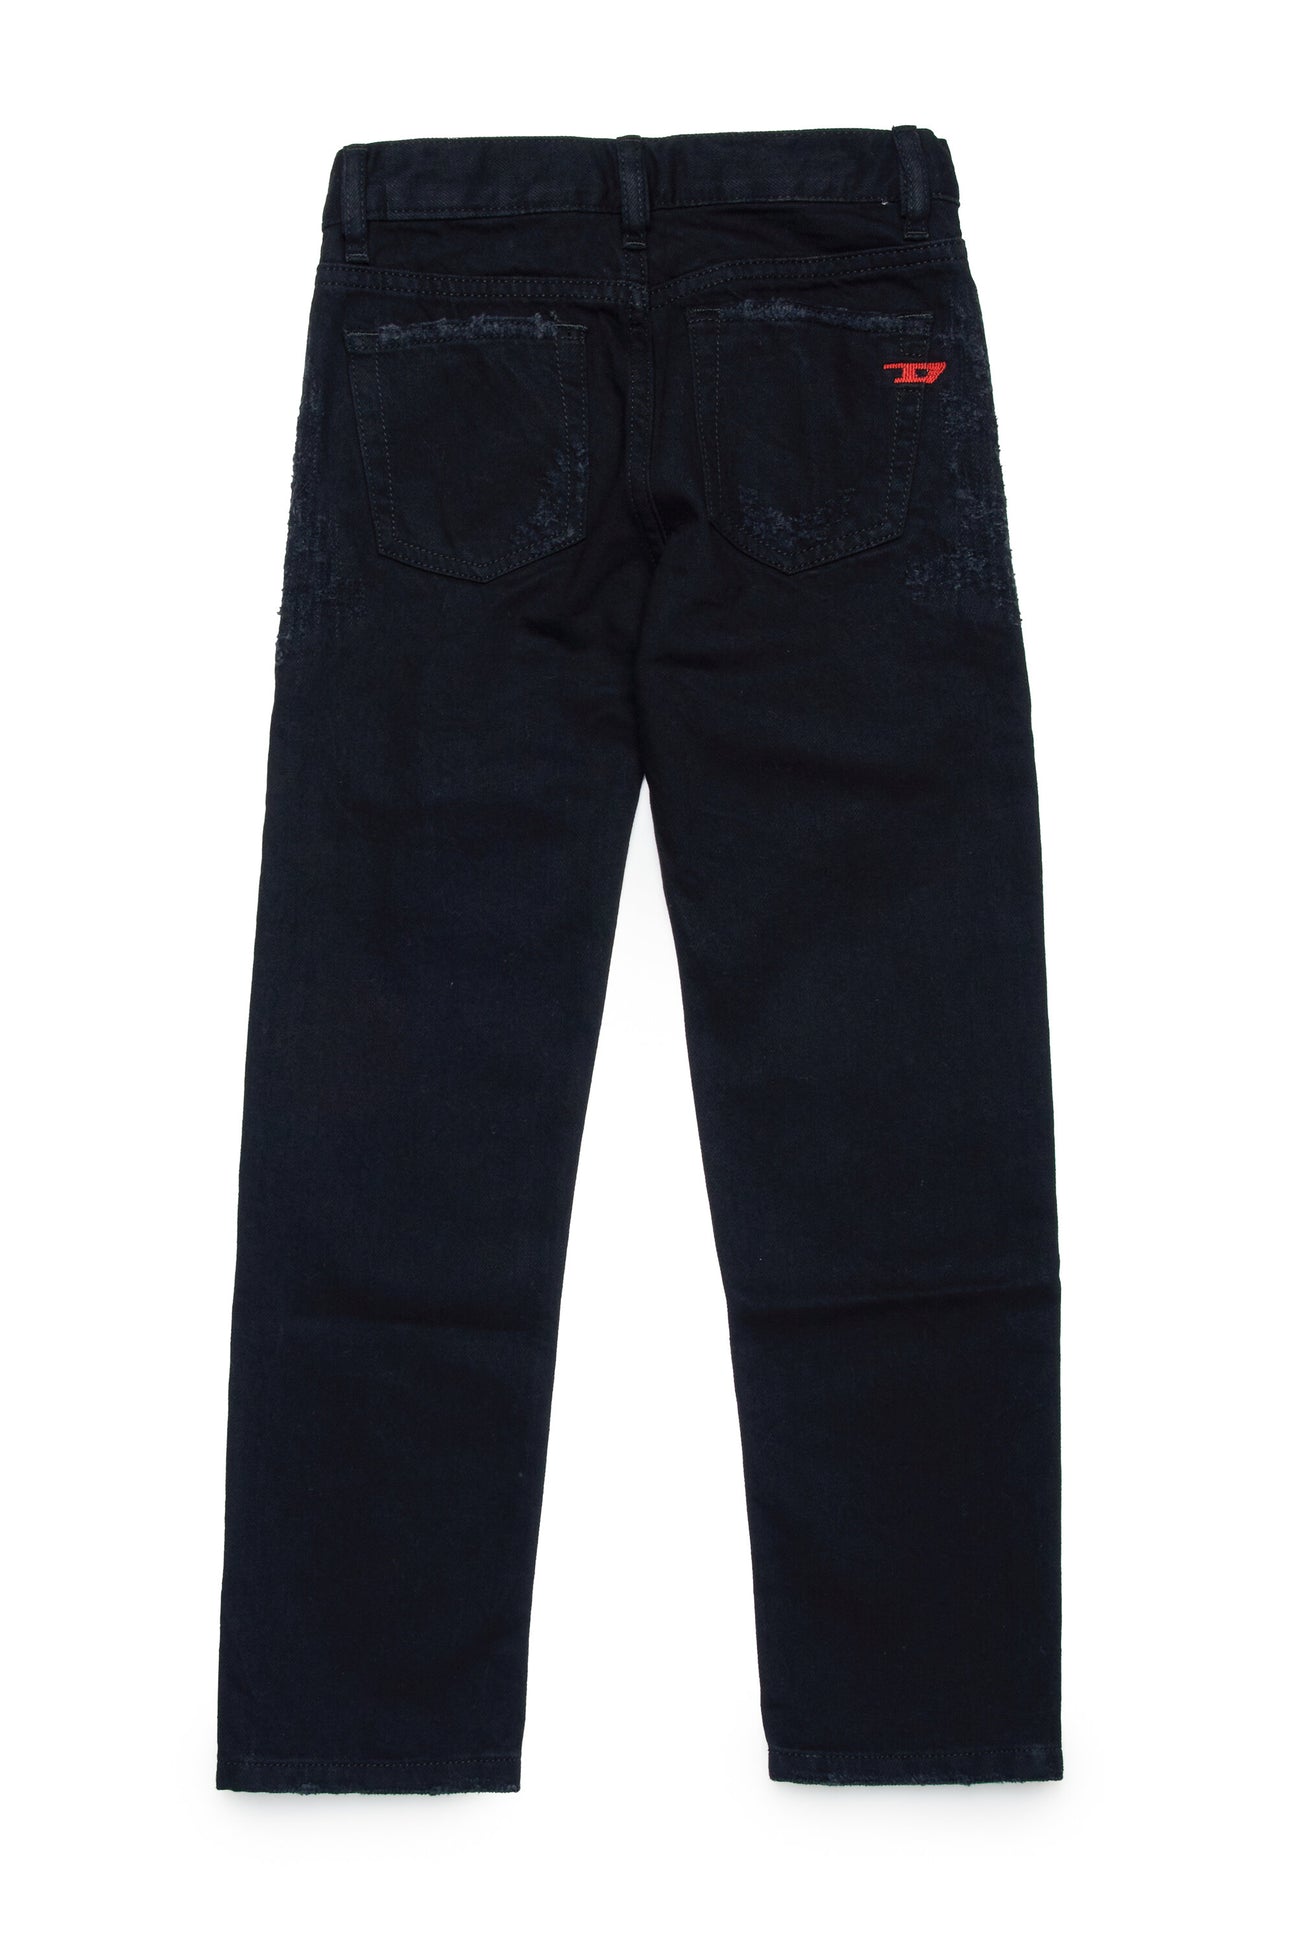 Jeans straight nero con abrasioni - 2020 D-Viker Jeans straight nero con abrasioni - 2020 D-Viker